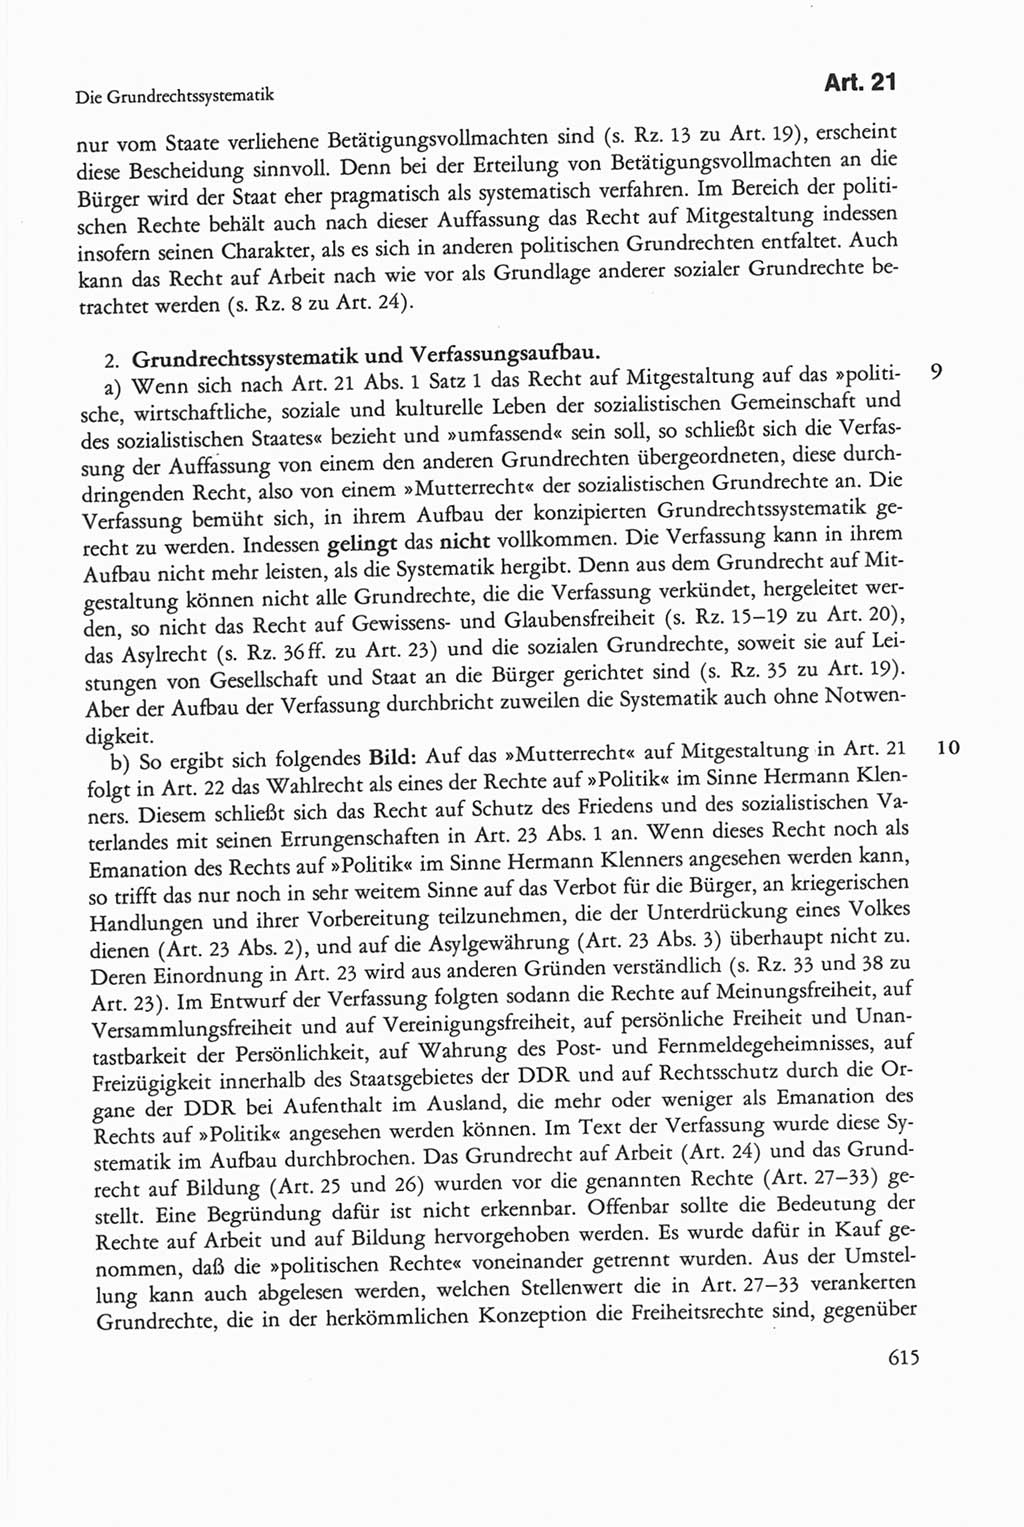 Die sozialistische Verfassung der Deutschen Demokratischen Republik (DDR), Kommentar mit einem Nachtrag 1997, Seite 615 (Soz. Verf. DDR Komm. Nachtr. 1997, S. 615)